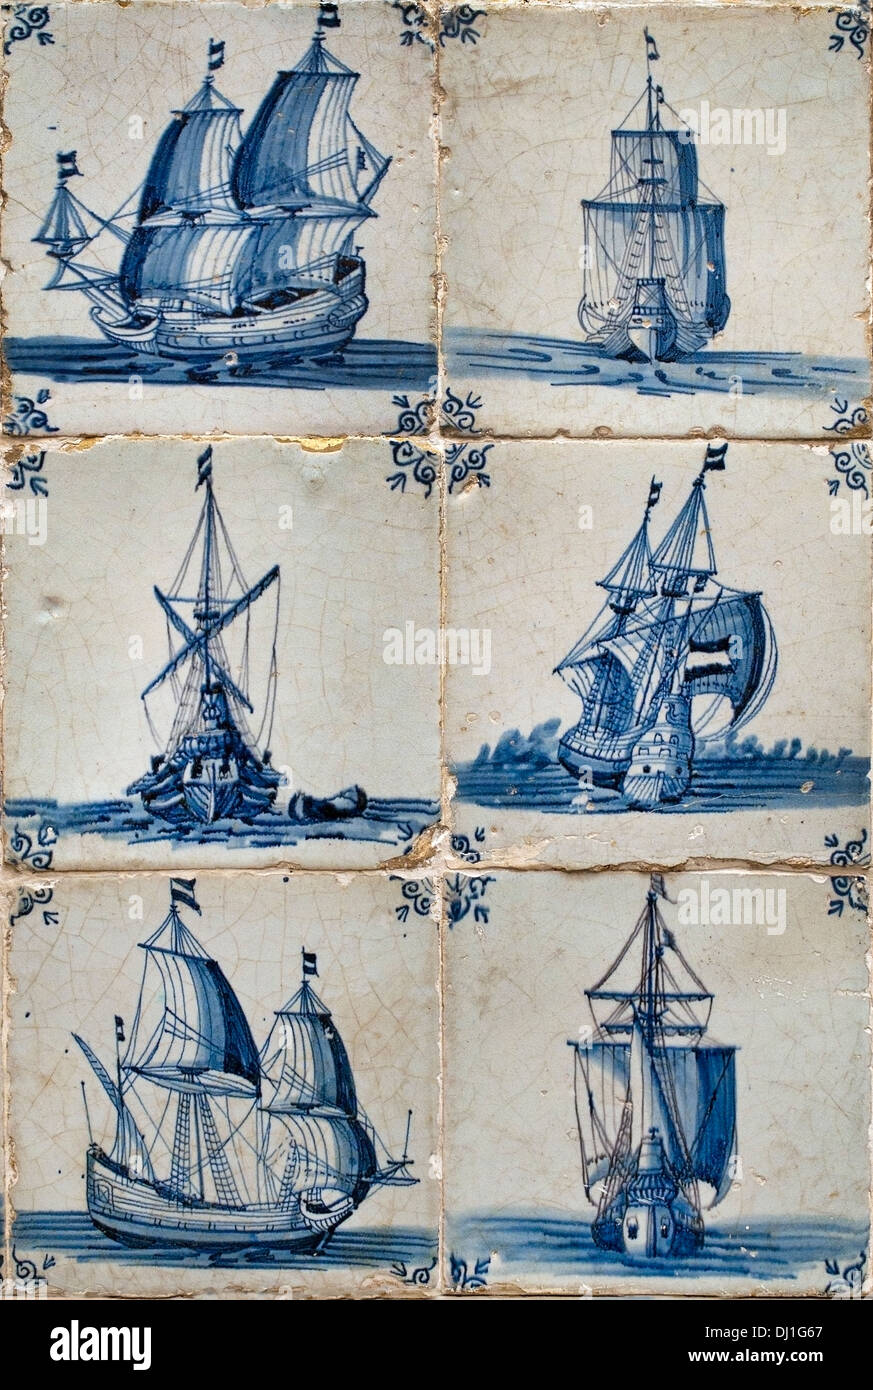 Segeln Schiff Boot holländischen Fliesen blau Fliese 17. Jahrhundert Niederlande Holland Museum Stockfoto